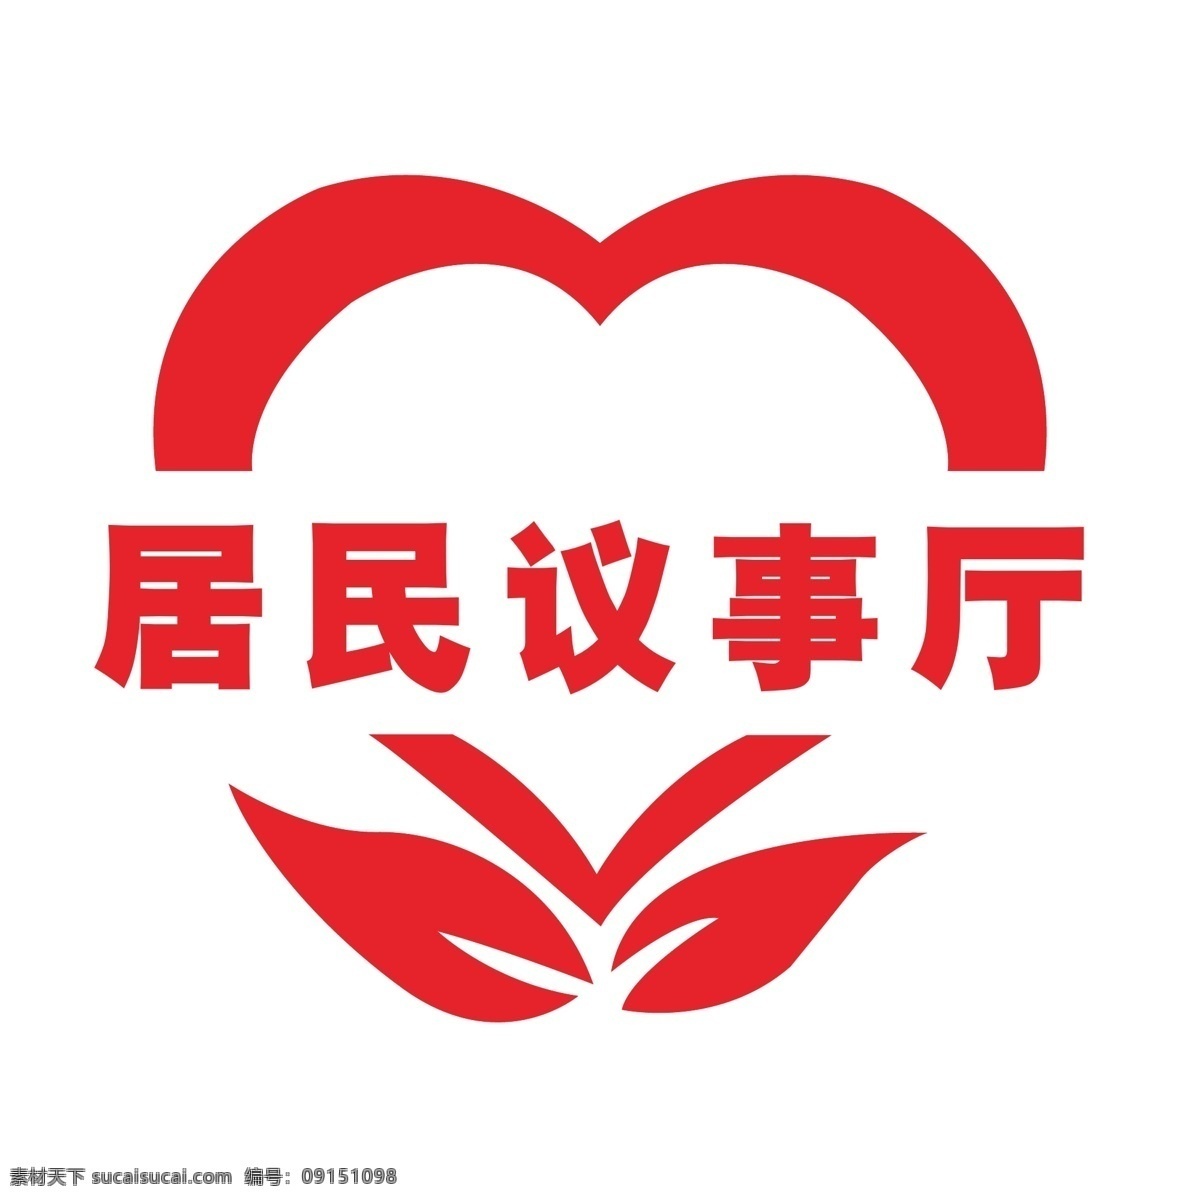 居民 议事厅 居民议事厅 logo 心型 叶子 社区logo